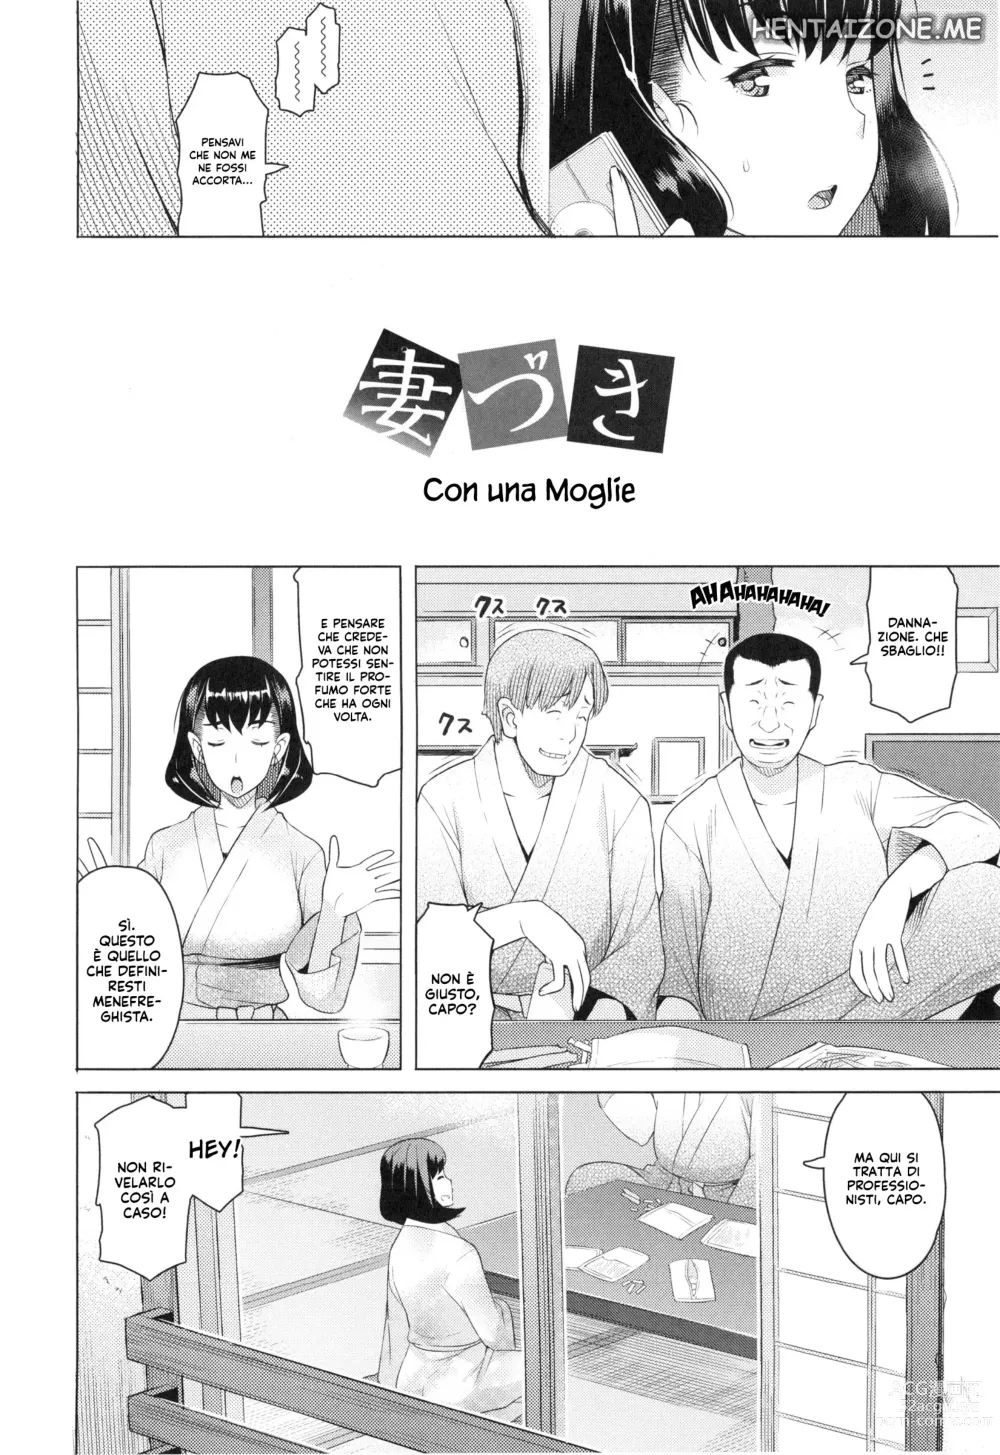 Page 2 of manga Con una Moglie